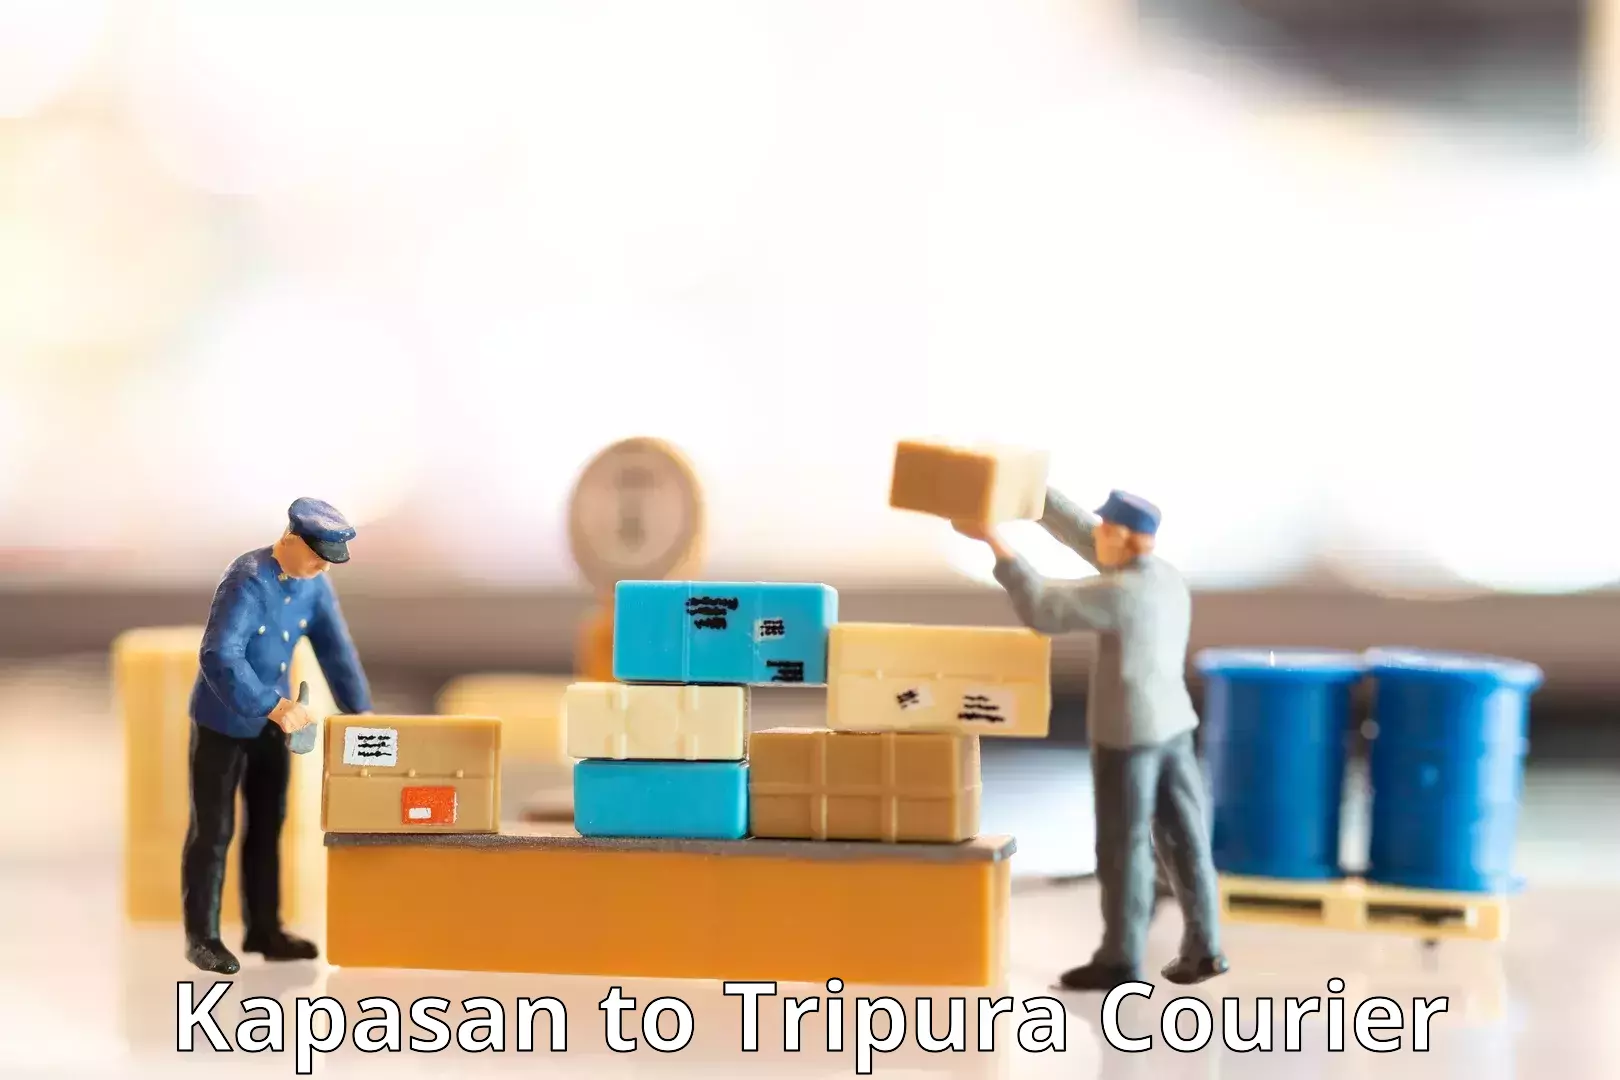 Courier service comparison Kapasan to Udaipur Tripura